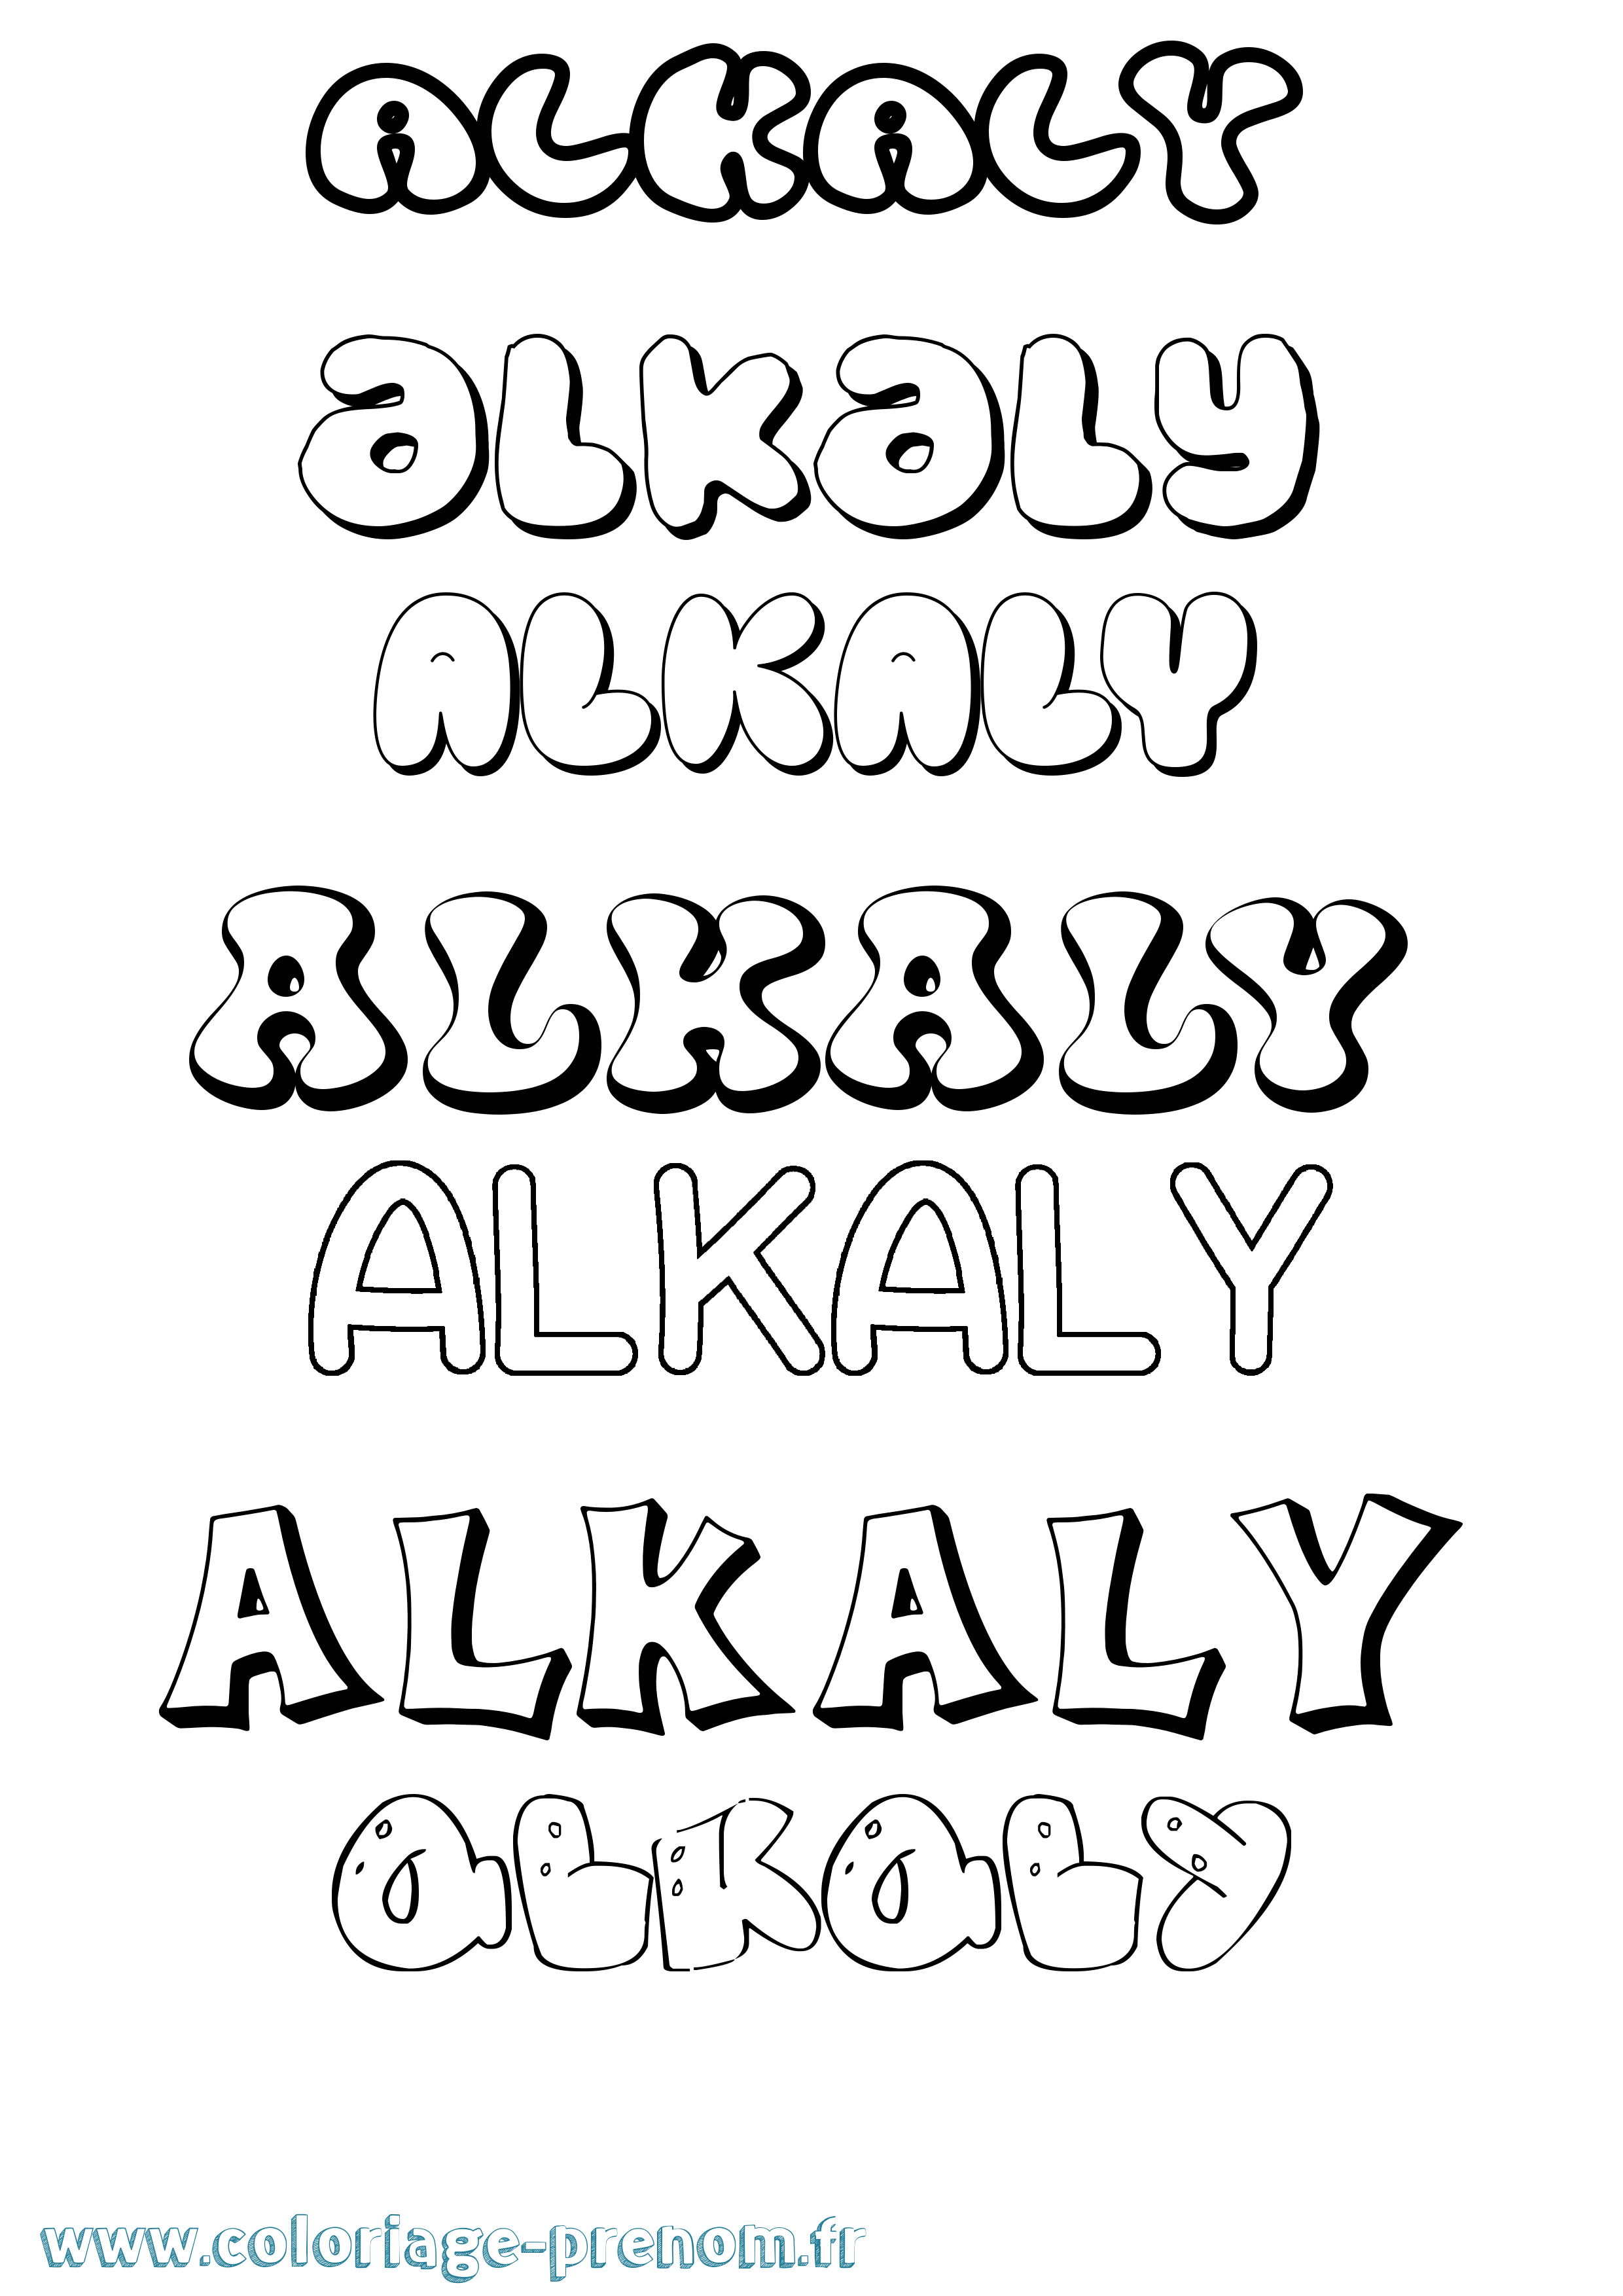 Coloriage prénom Alkaly Bubble